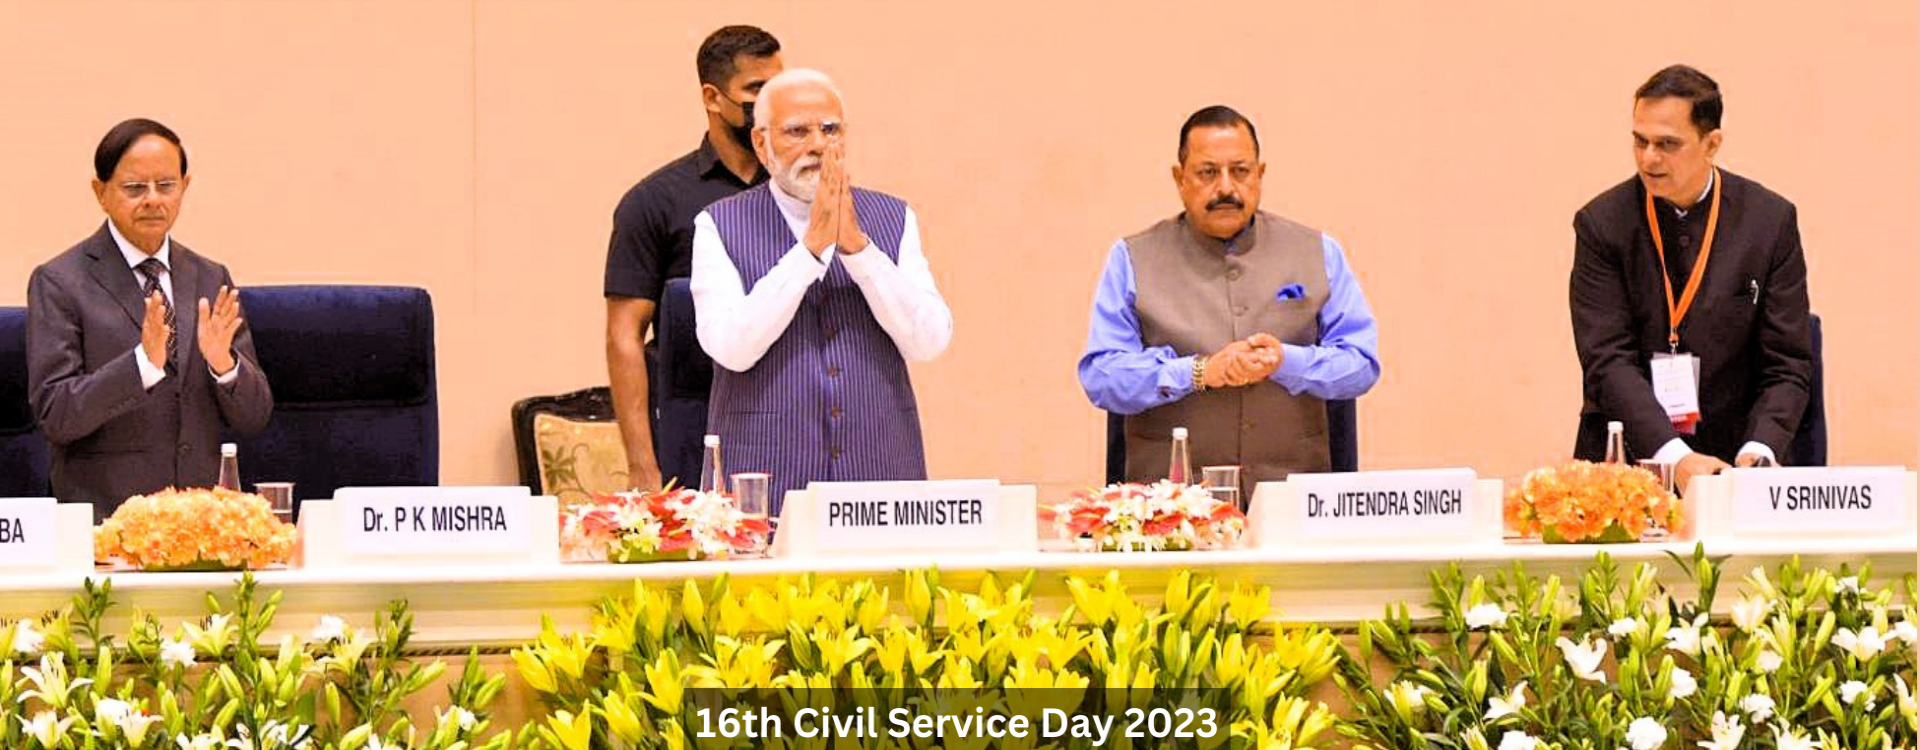 16th Civil Service Day 2023